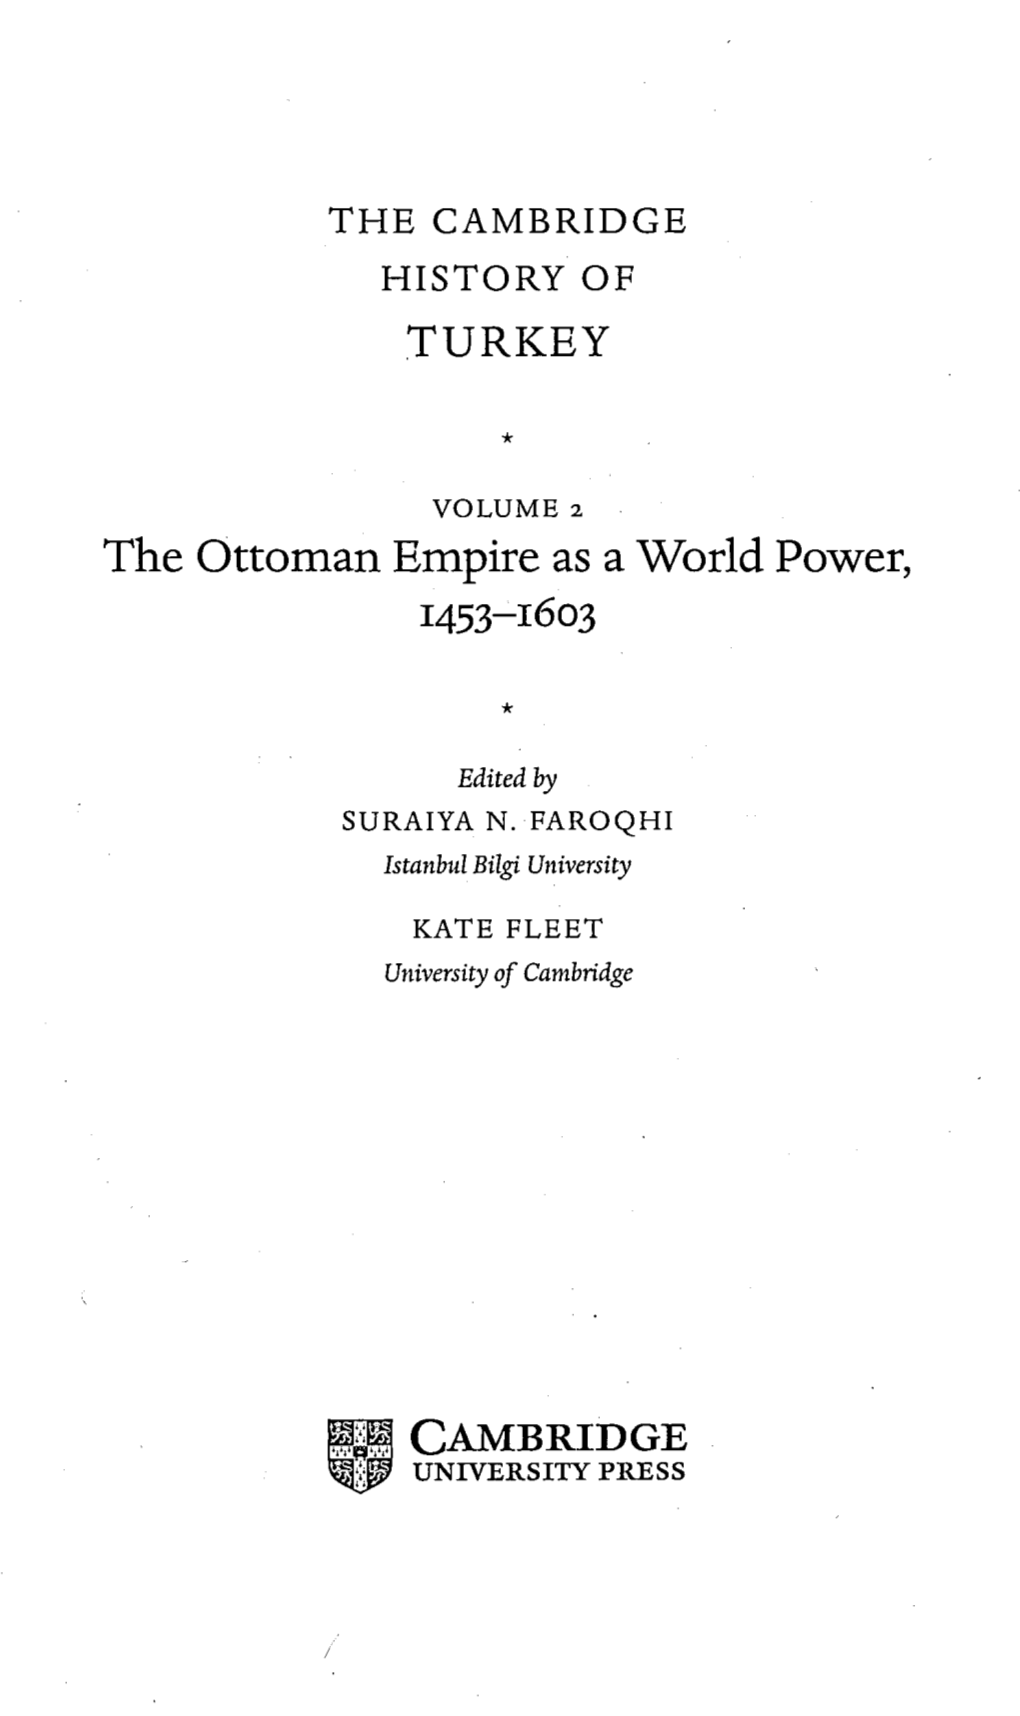 The Ottoman Empire As a World Power, 1453-1603